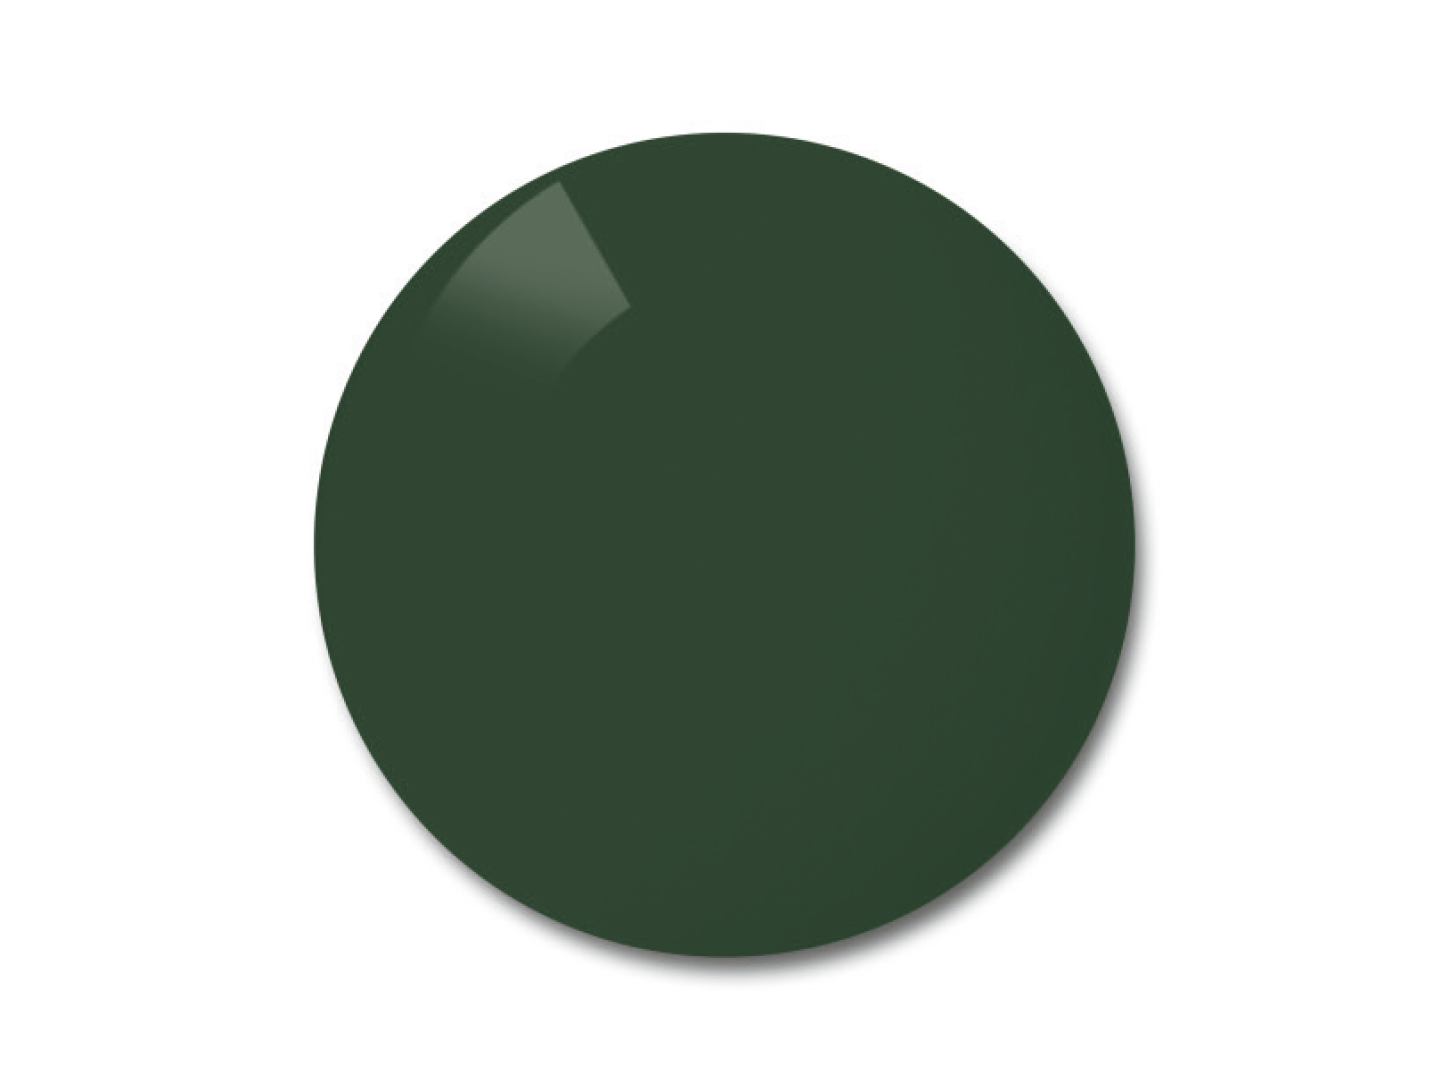 Kuva Pioneerin (harmaa-vihreä) värisestä polarisoidusta linssistä 